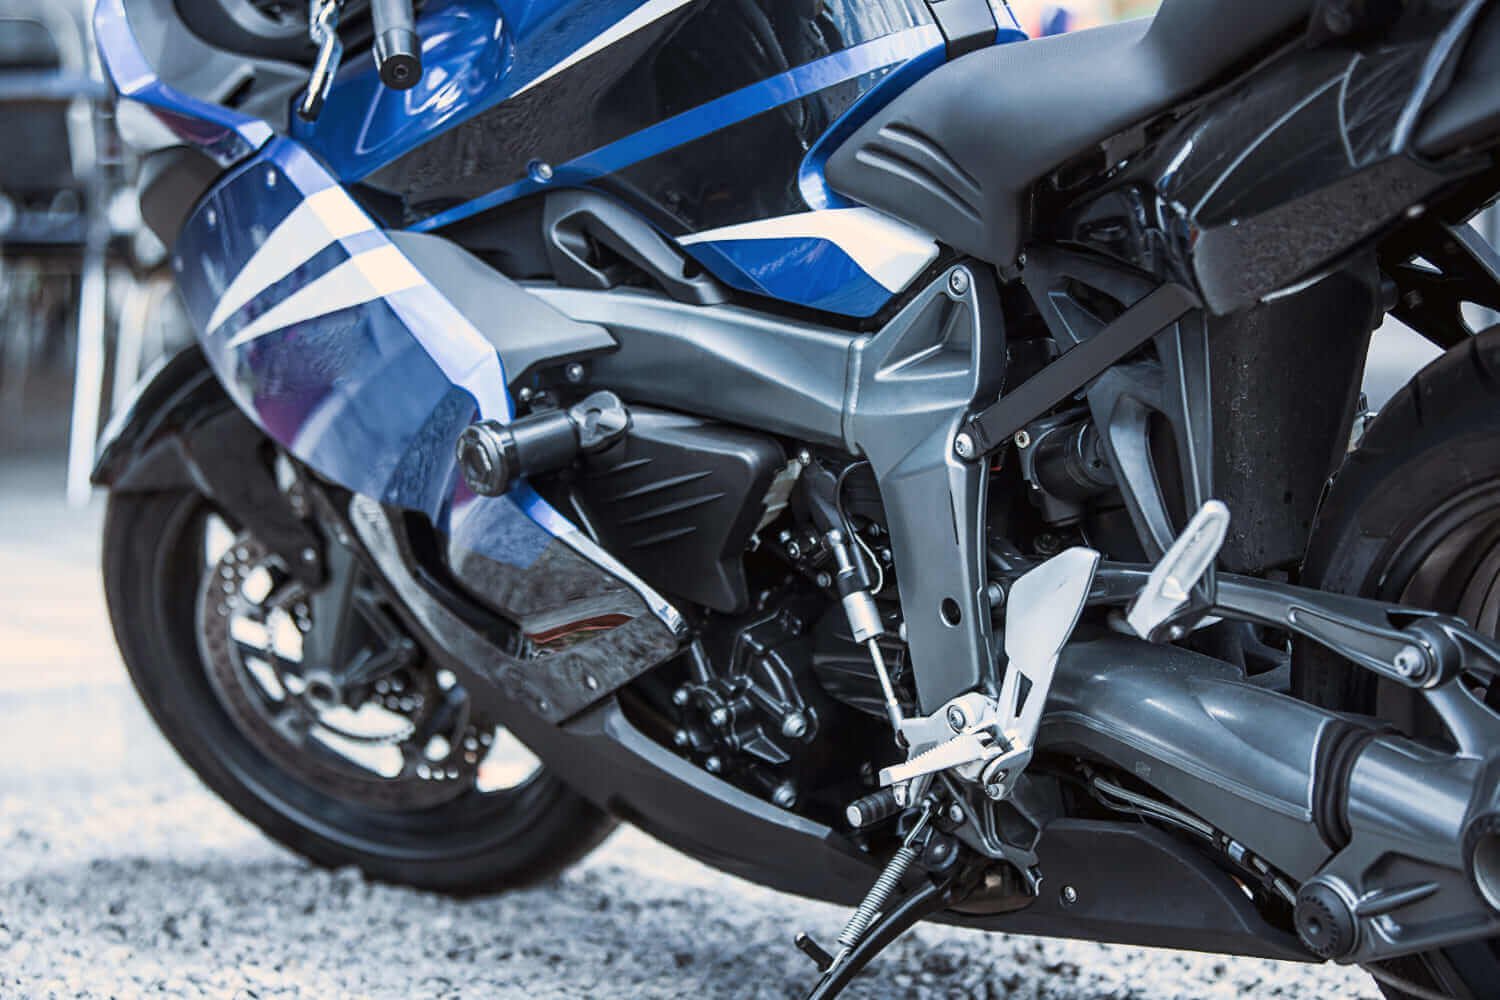 Motocicleta Yamaha YZF-R1 de alta tecnología y motor potente